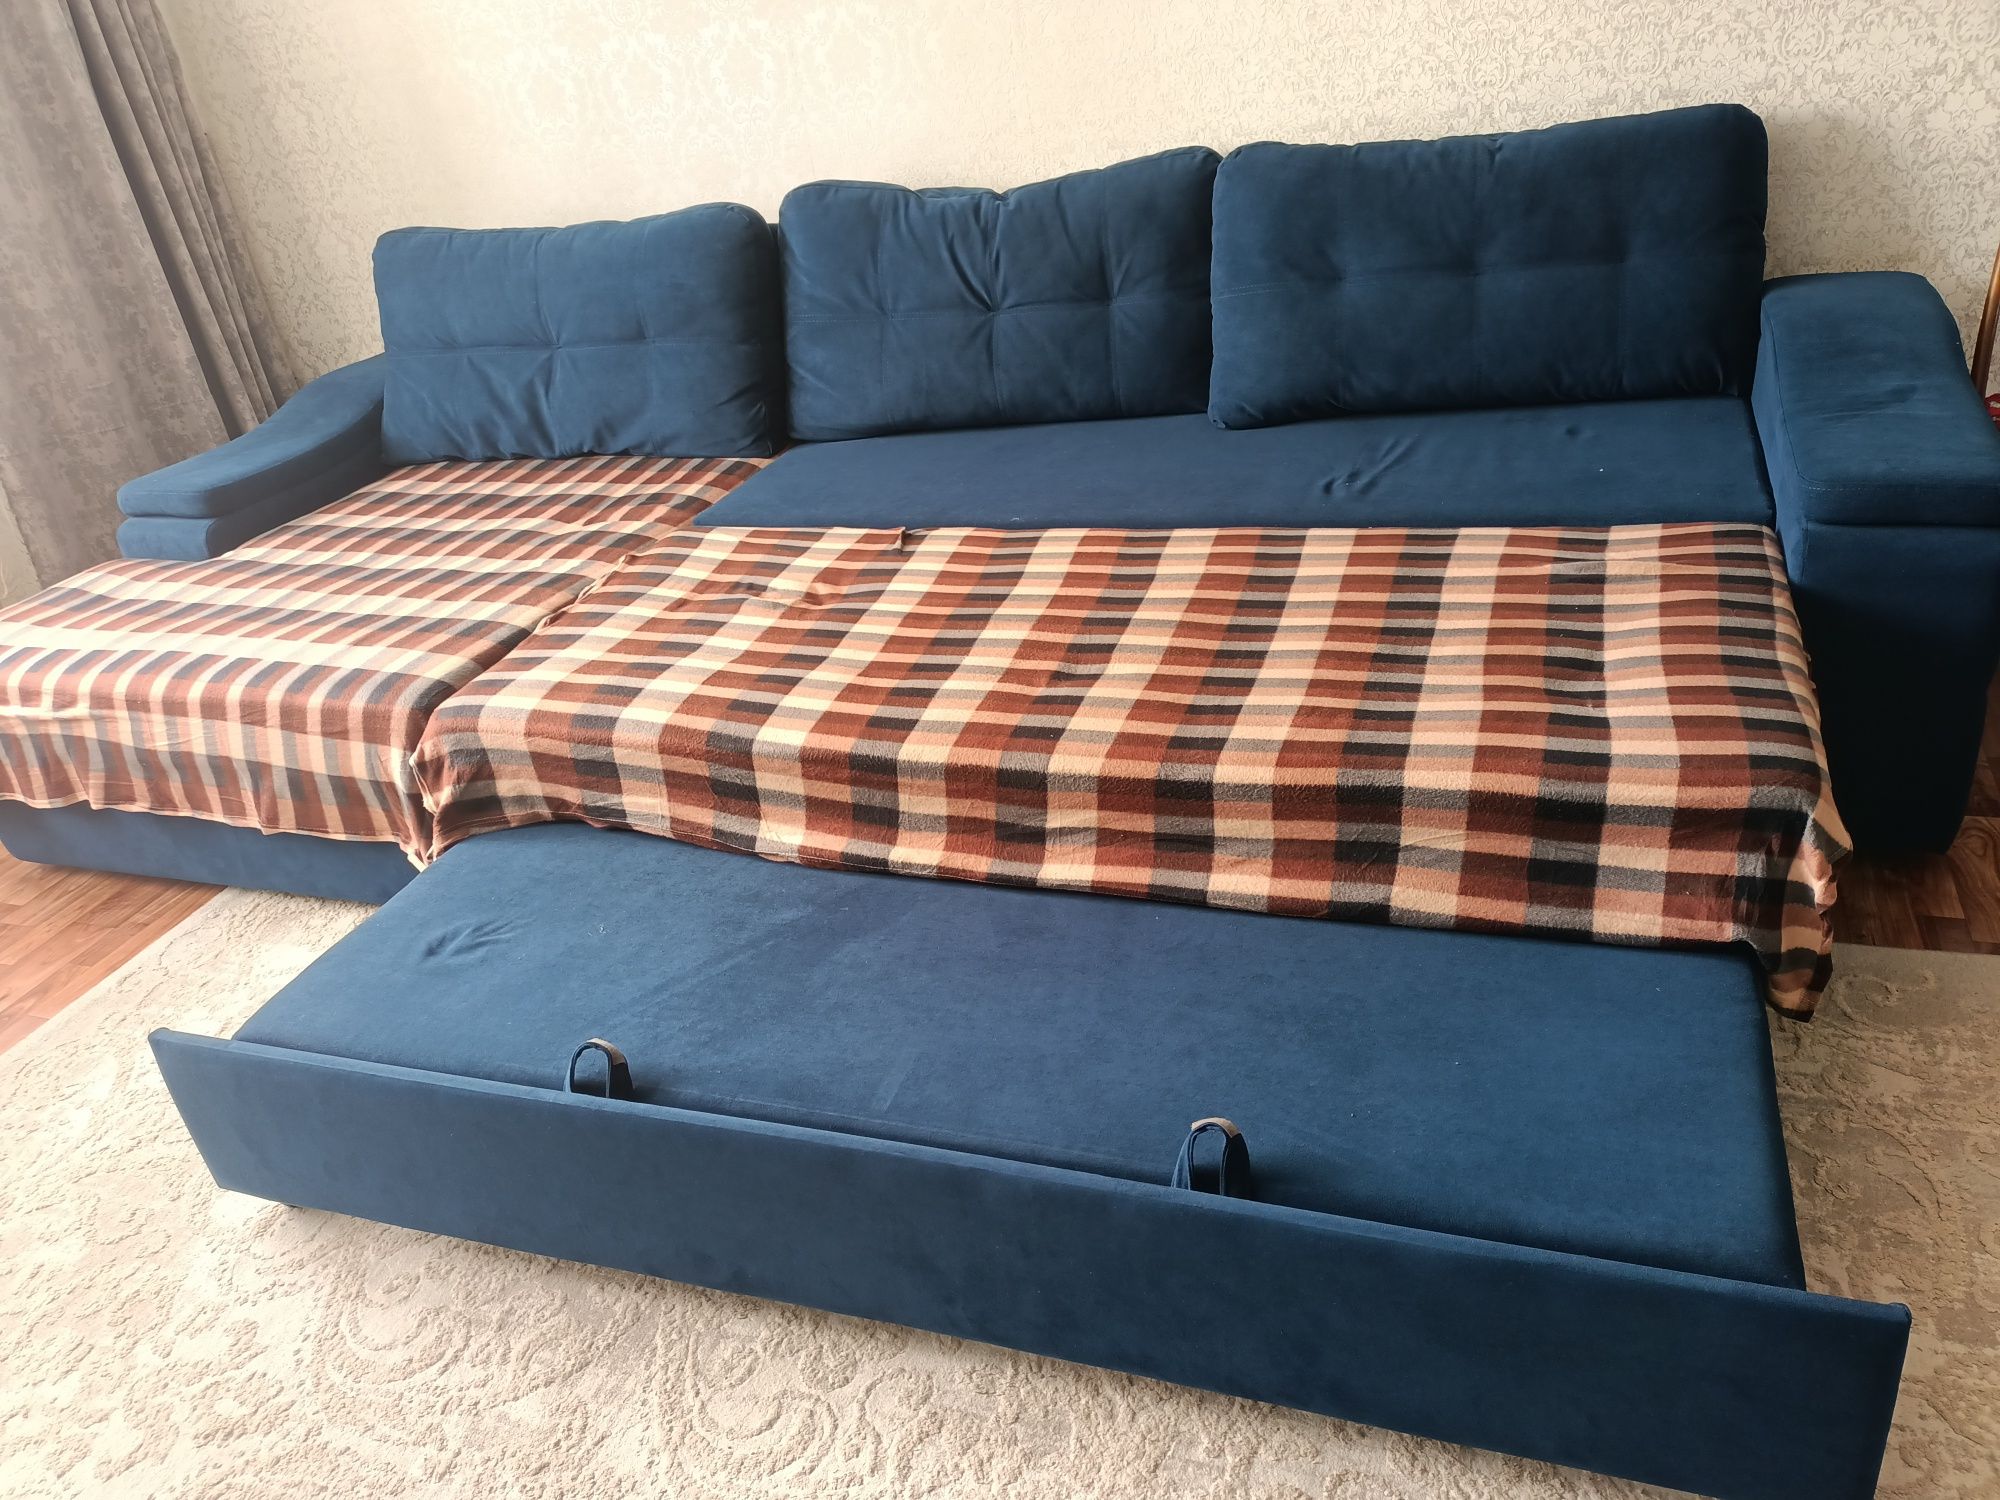 Продам диван в хорошем состоянии размер 3,50 на 2,50 торг уместен